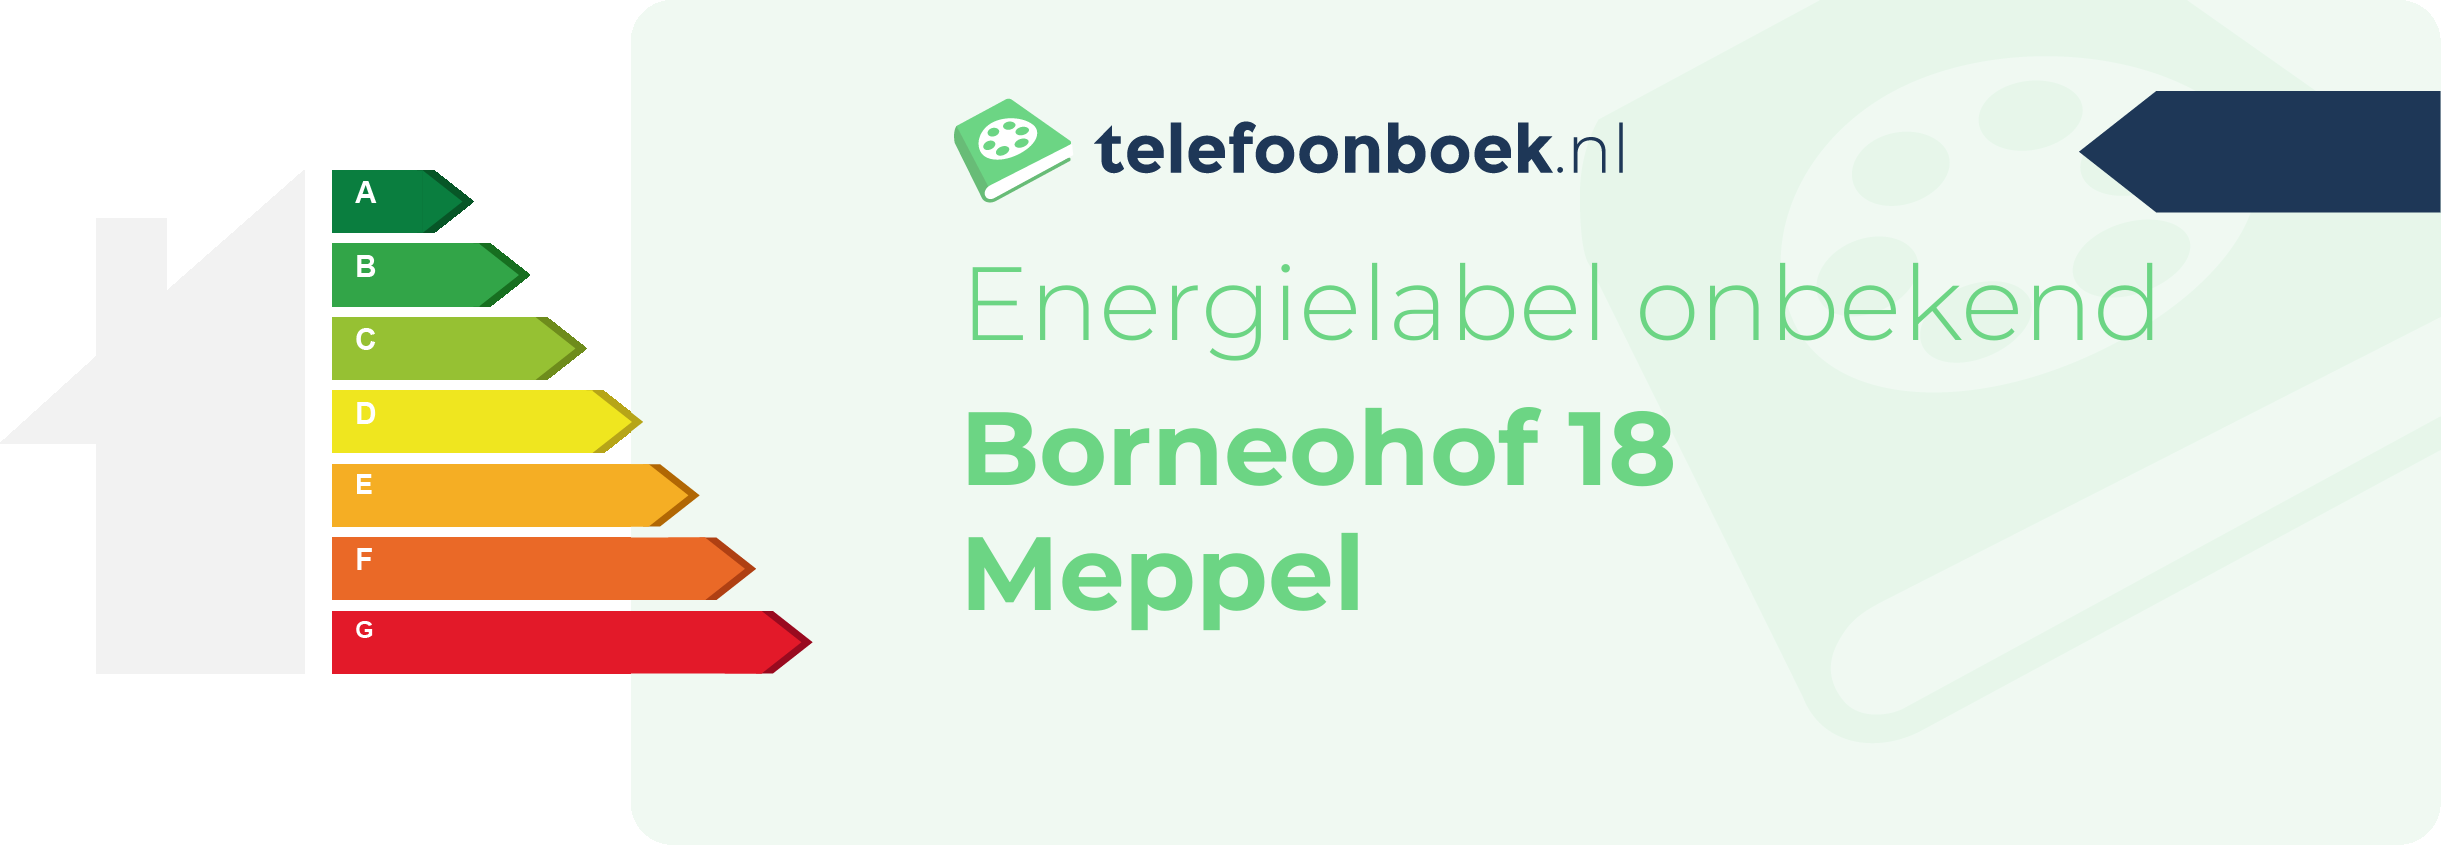 Energielabel Borneohof 18 Meppel